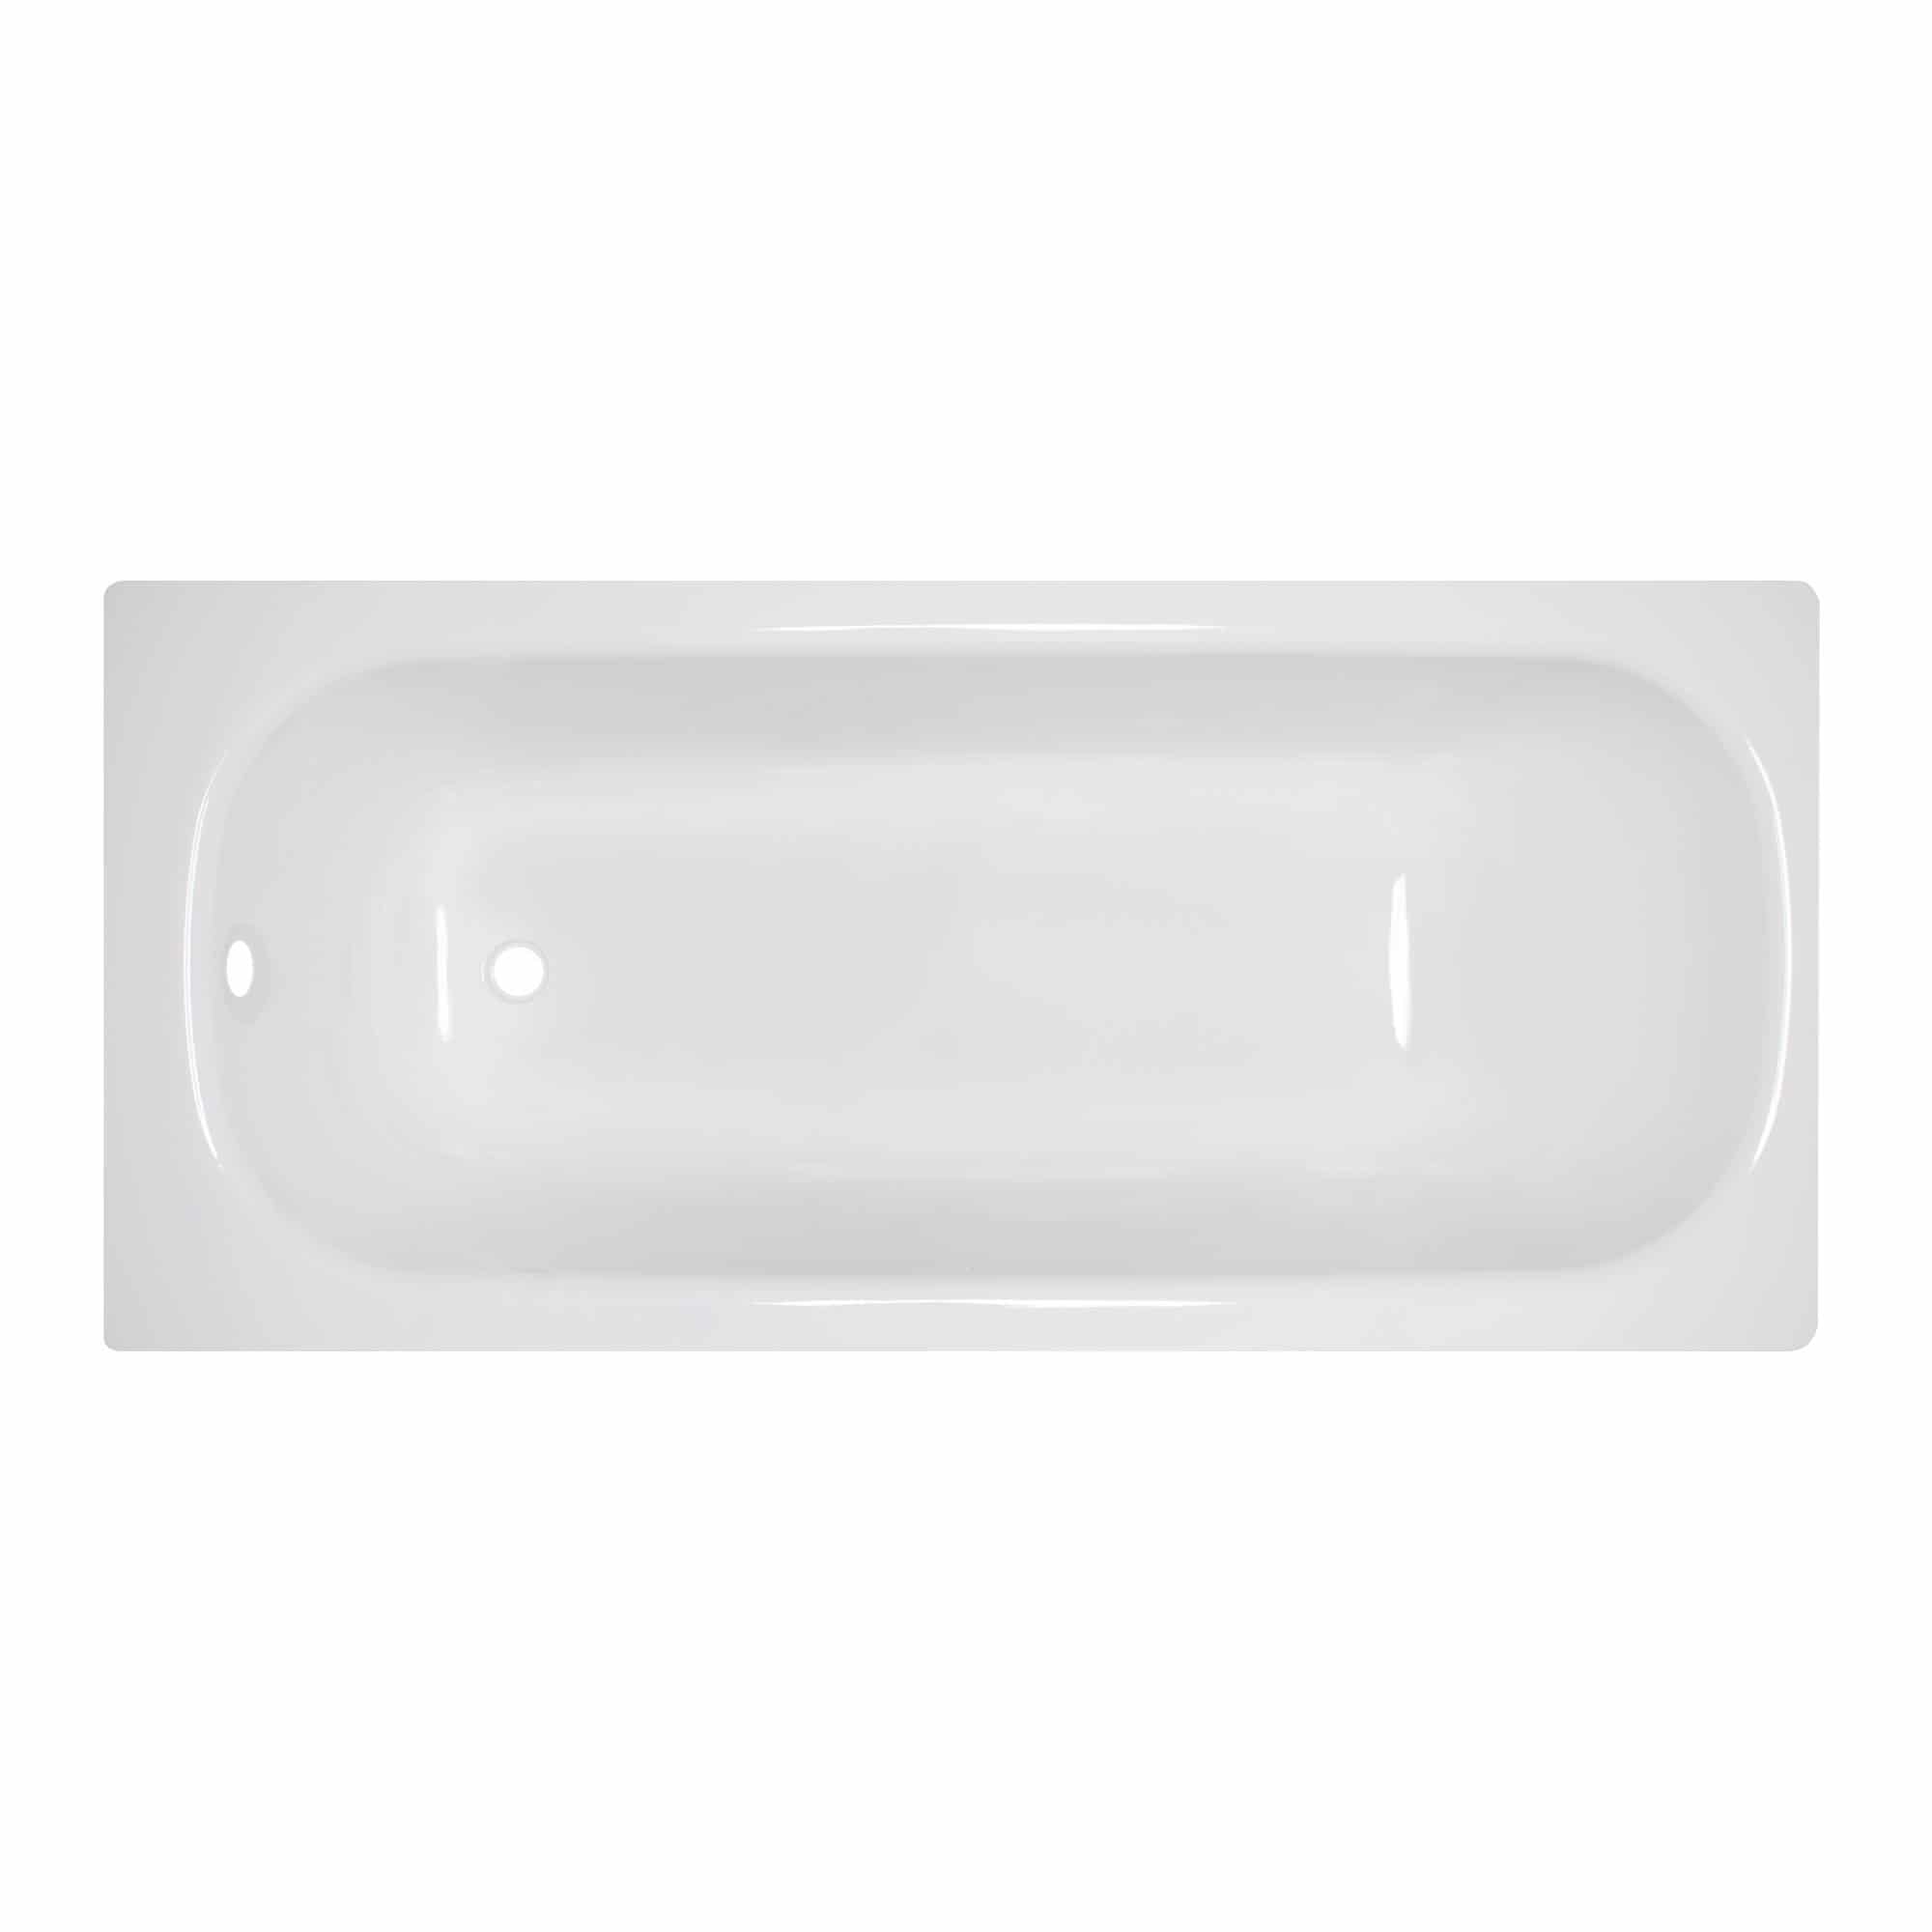 Stahl-Emaille Badewanne, rechteckig 140 cm x 70 cm, 2,4 mm, weiß